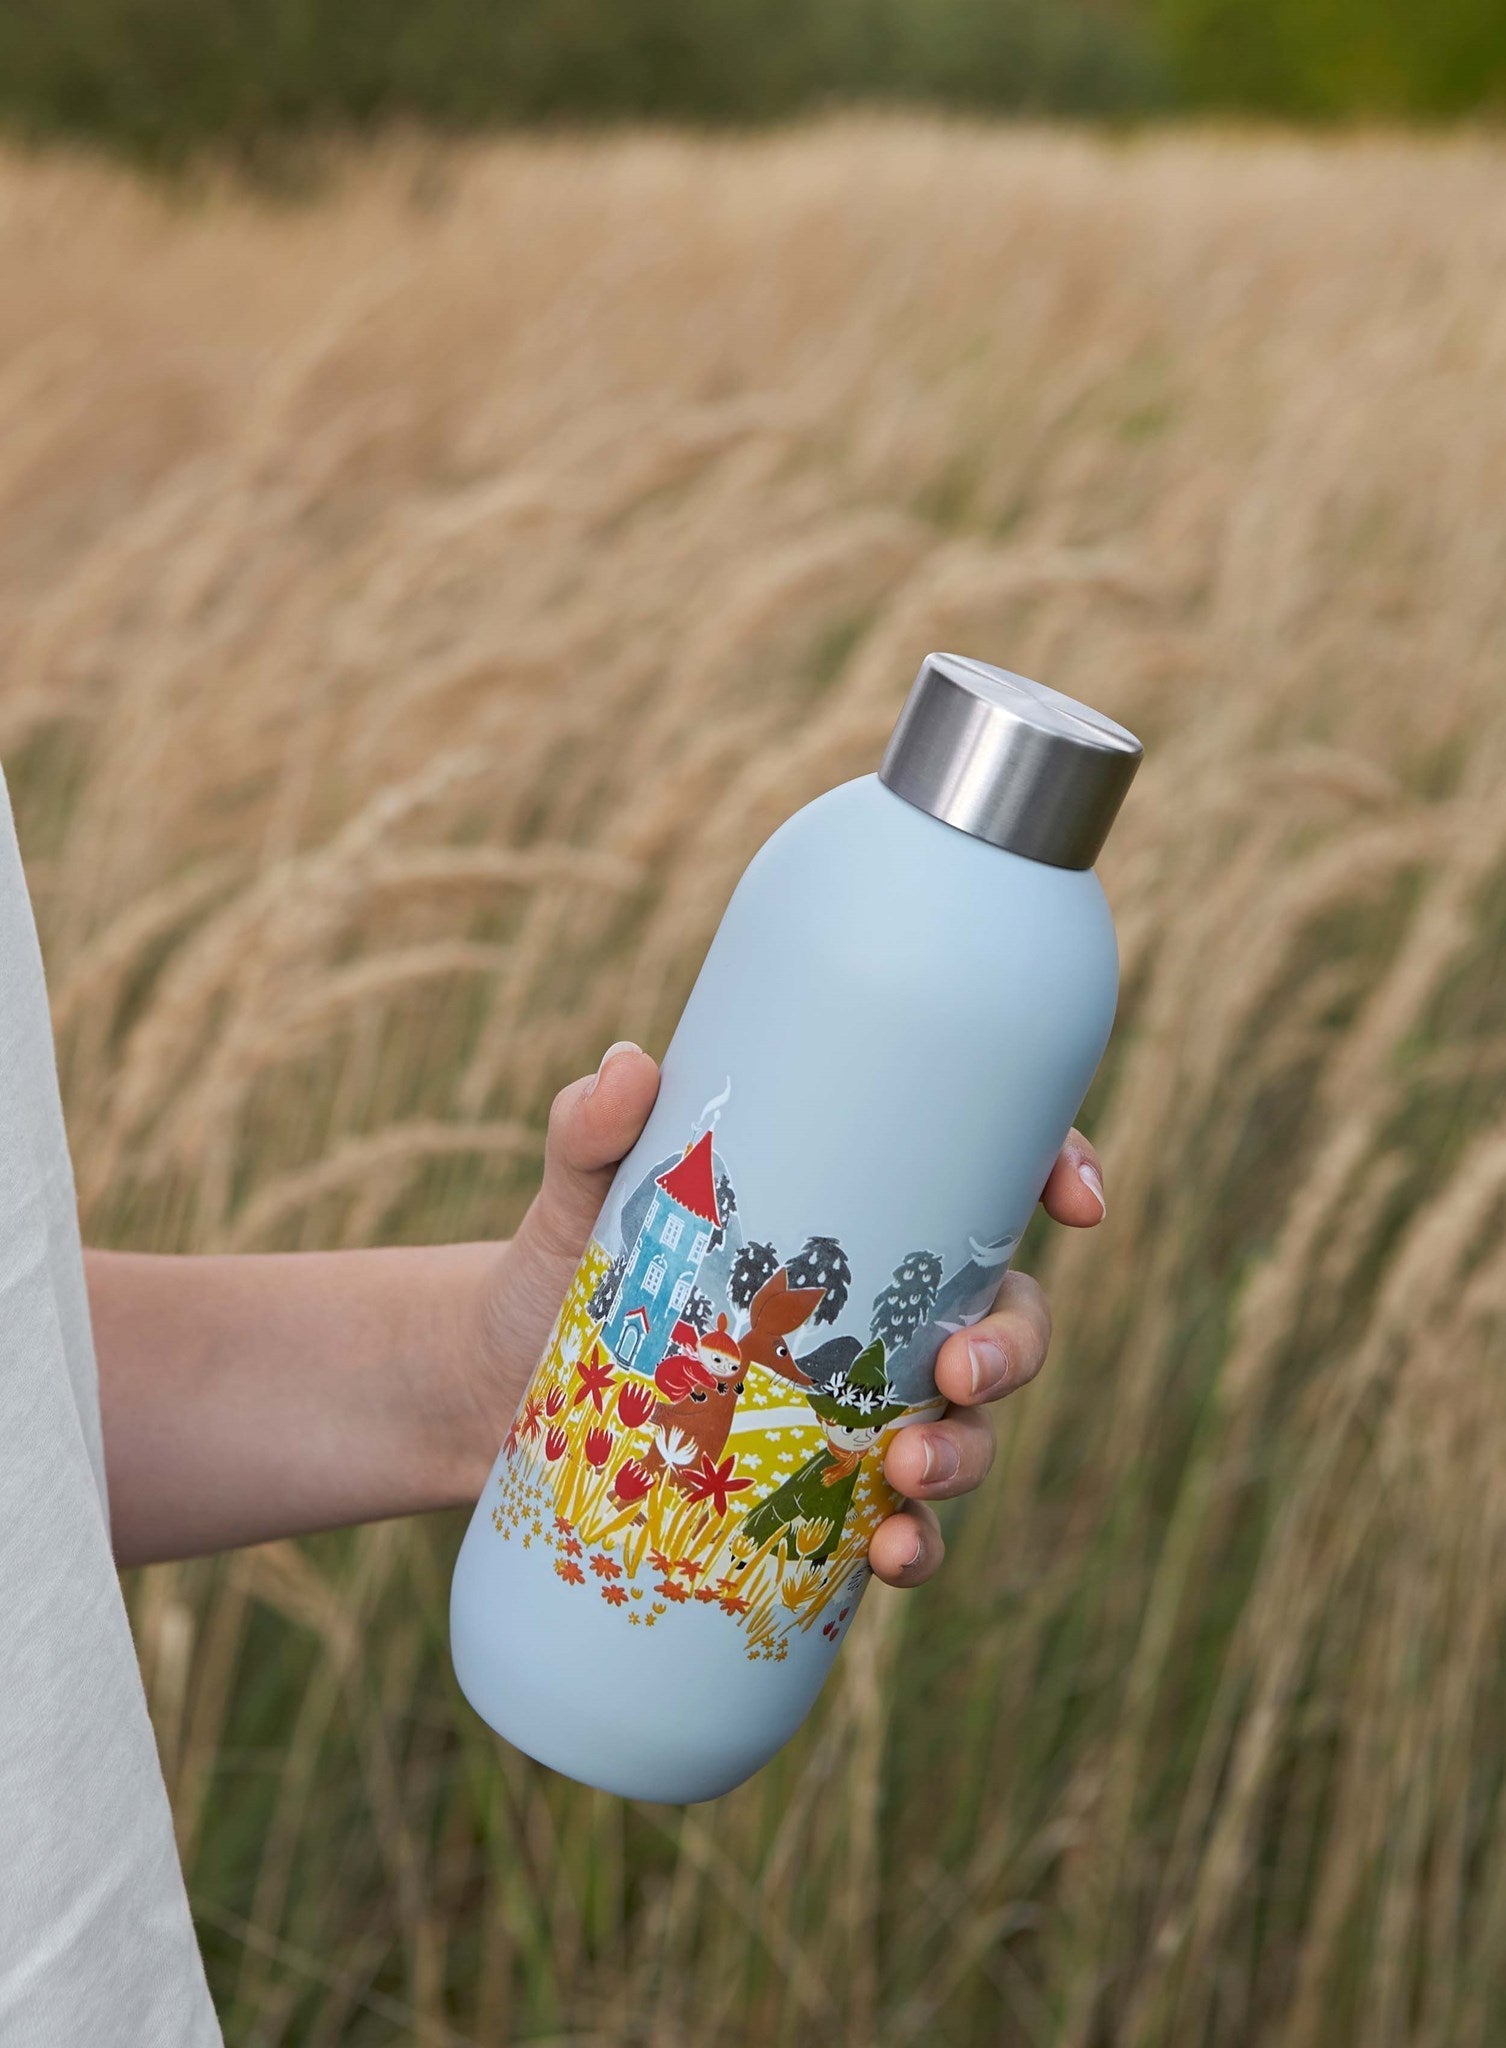 Stelton Keep Cool Water Bottle 0,75 L, Moomin Soft Sky